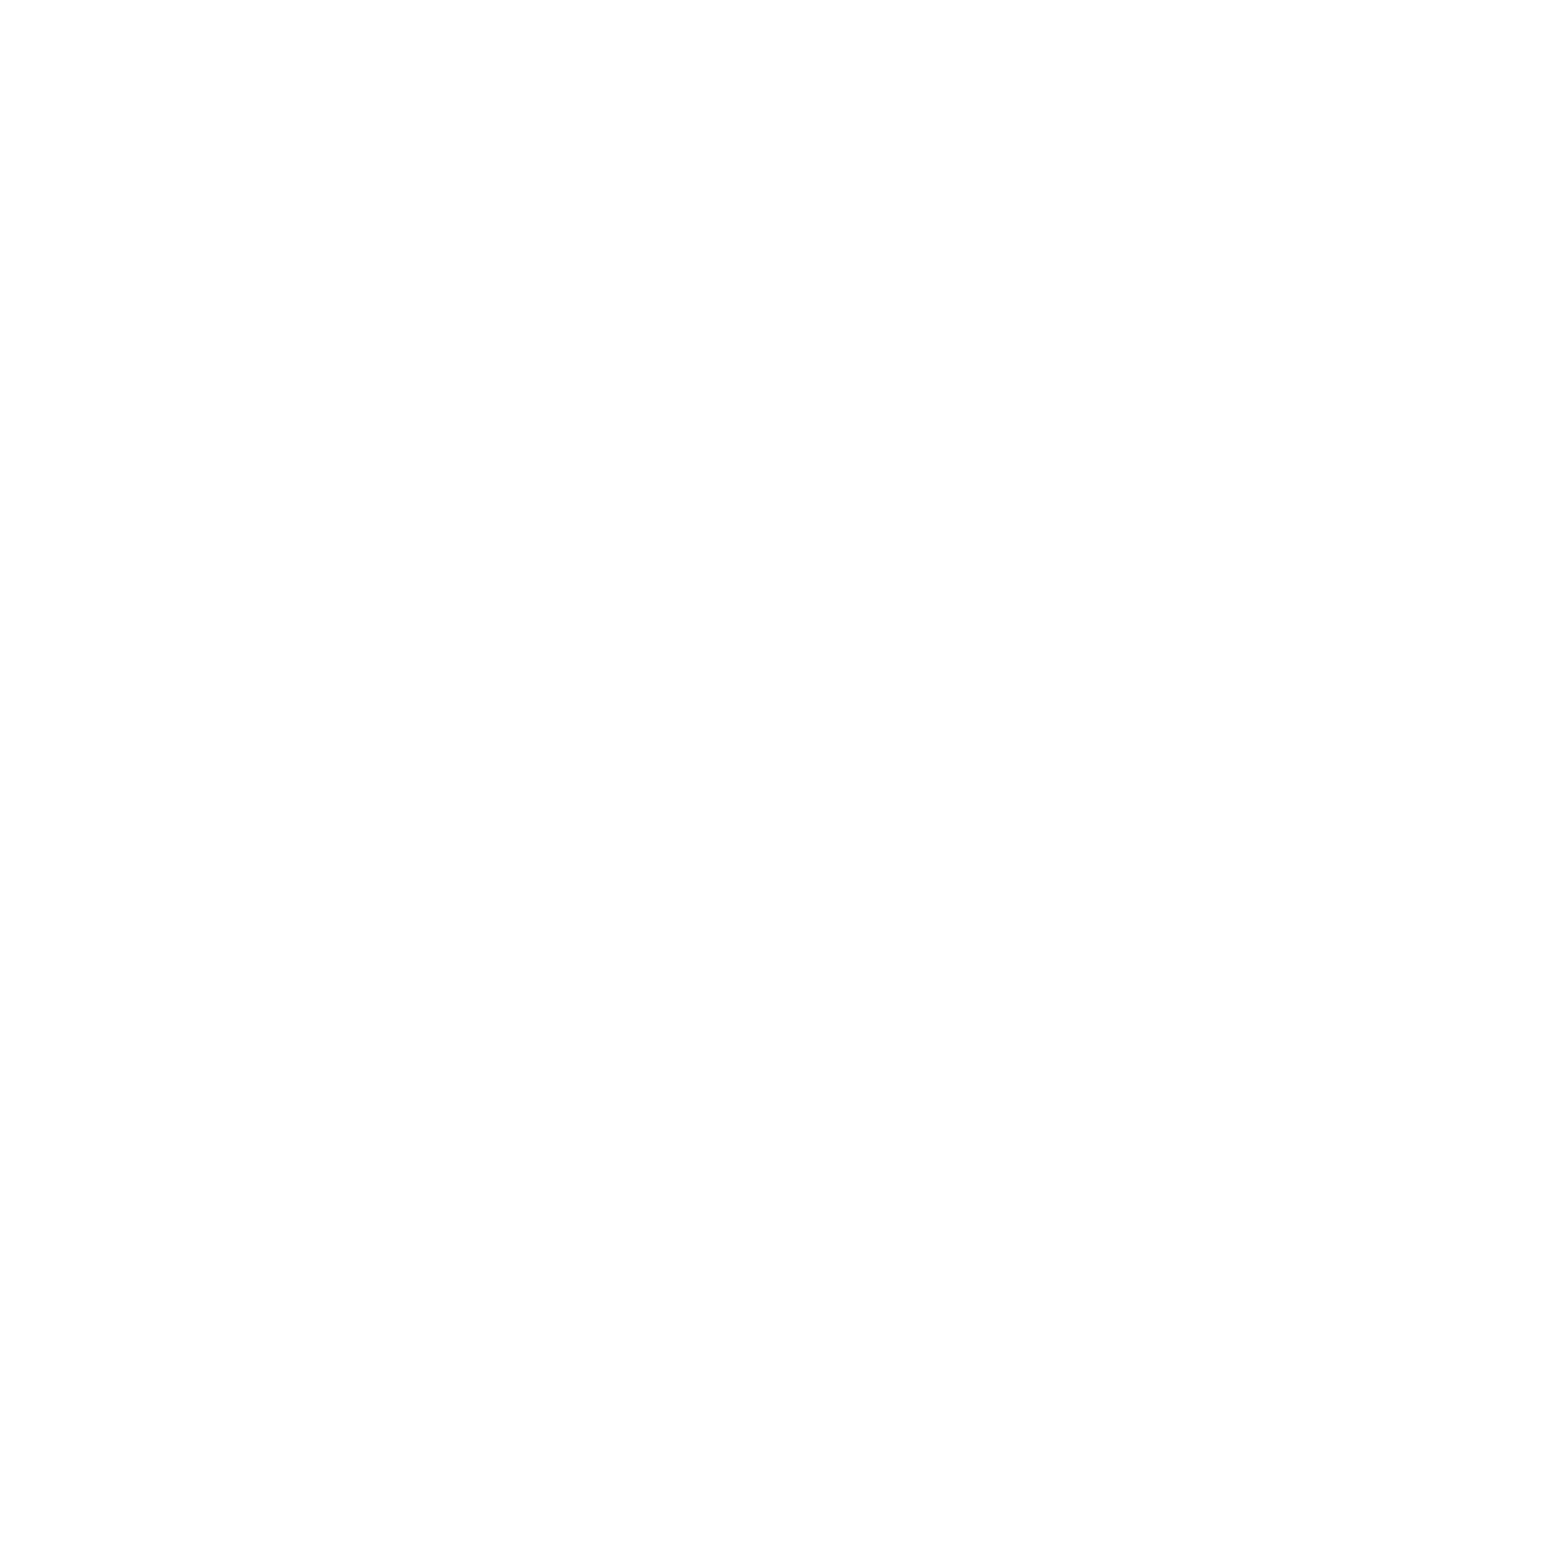 Pfizer logo pour fonds sombres (PNG transparent)